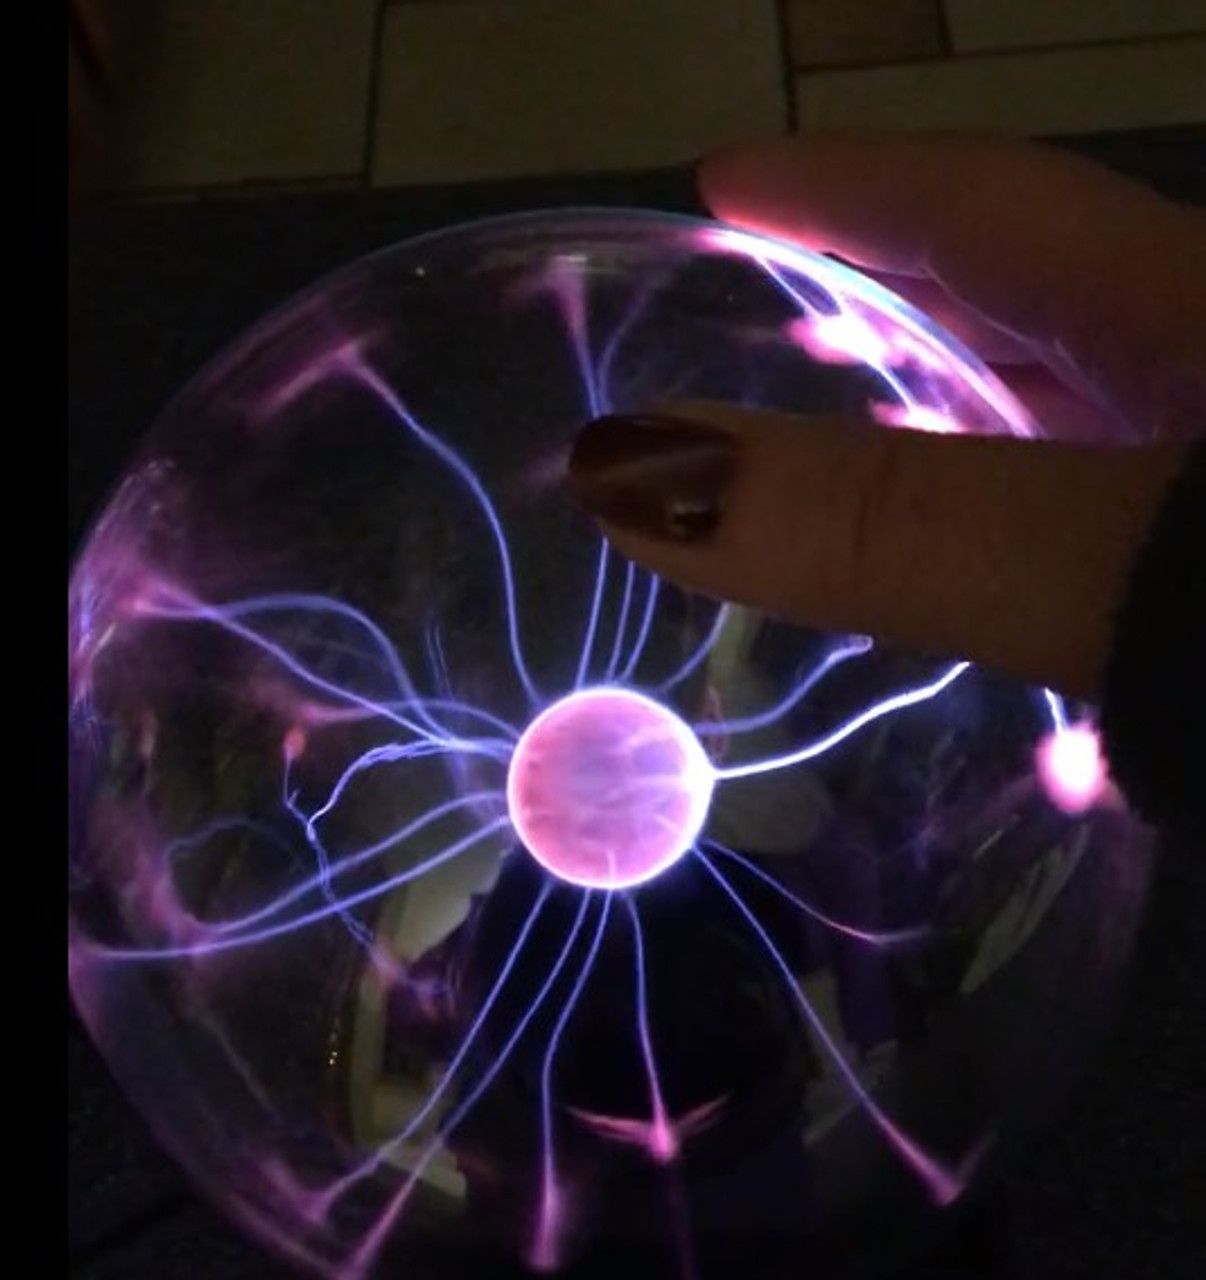 Plasma Ball ! Science Toys